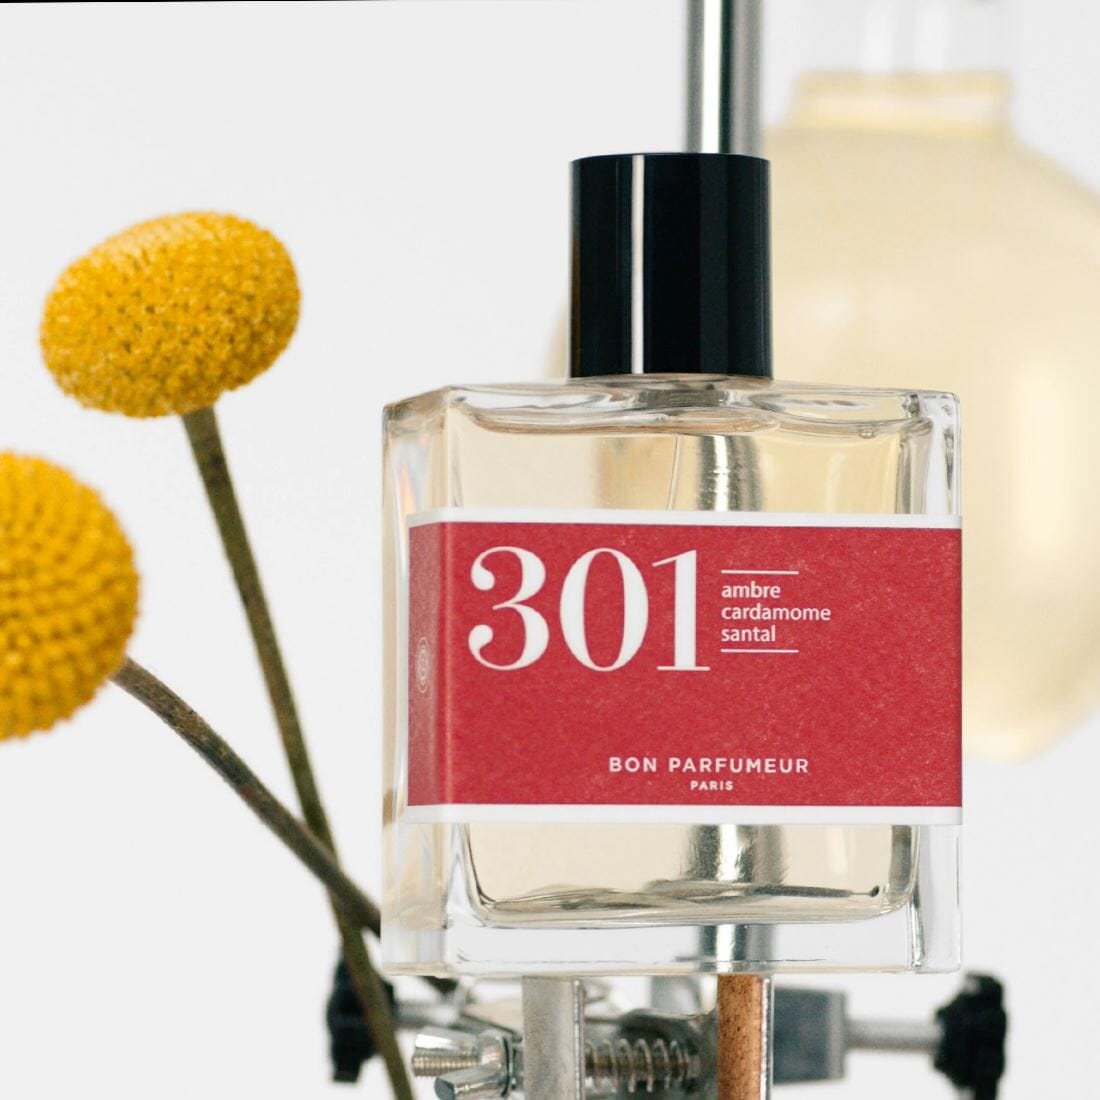 Eau de parfum 301 à l'ambre, à la cardamome et au santal Eau de parfum Bon Parfumeur France 